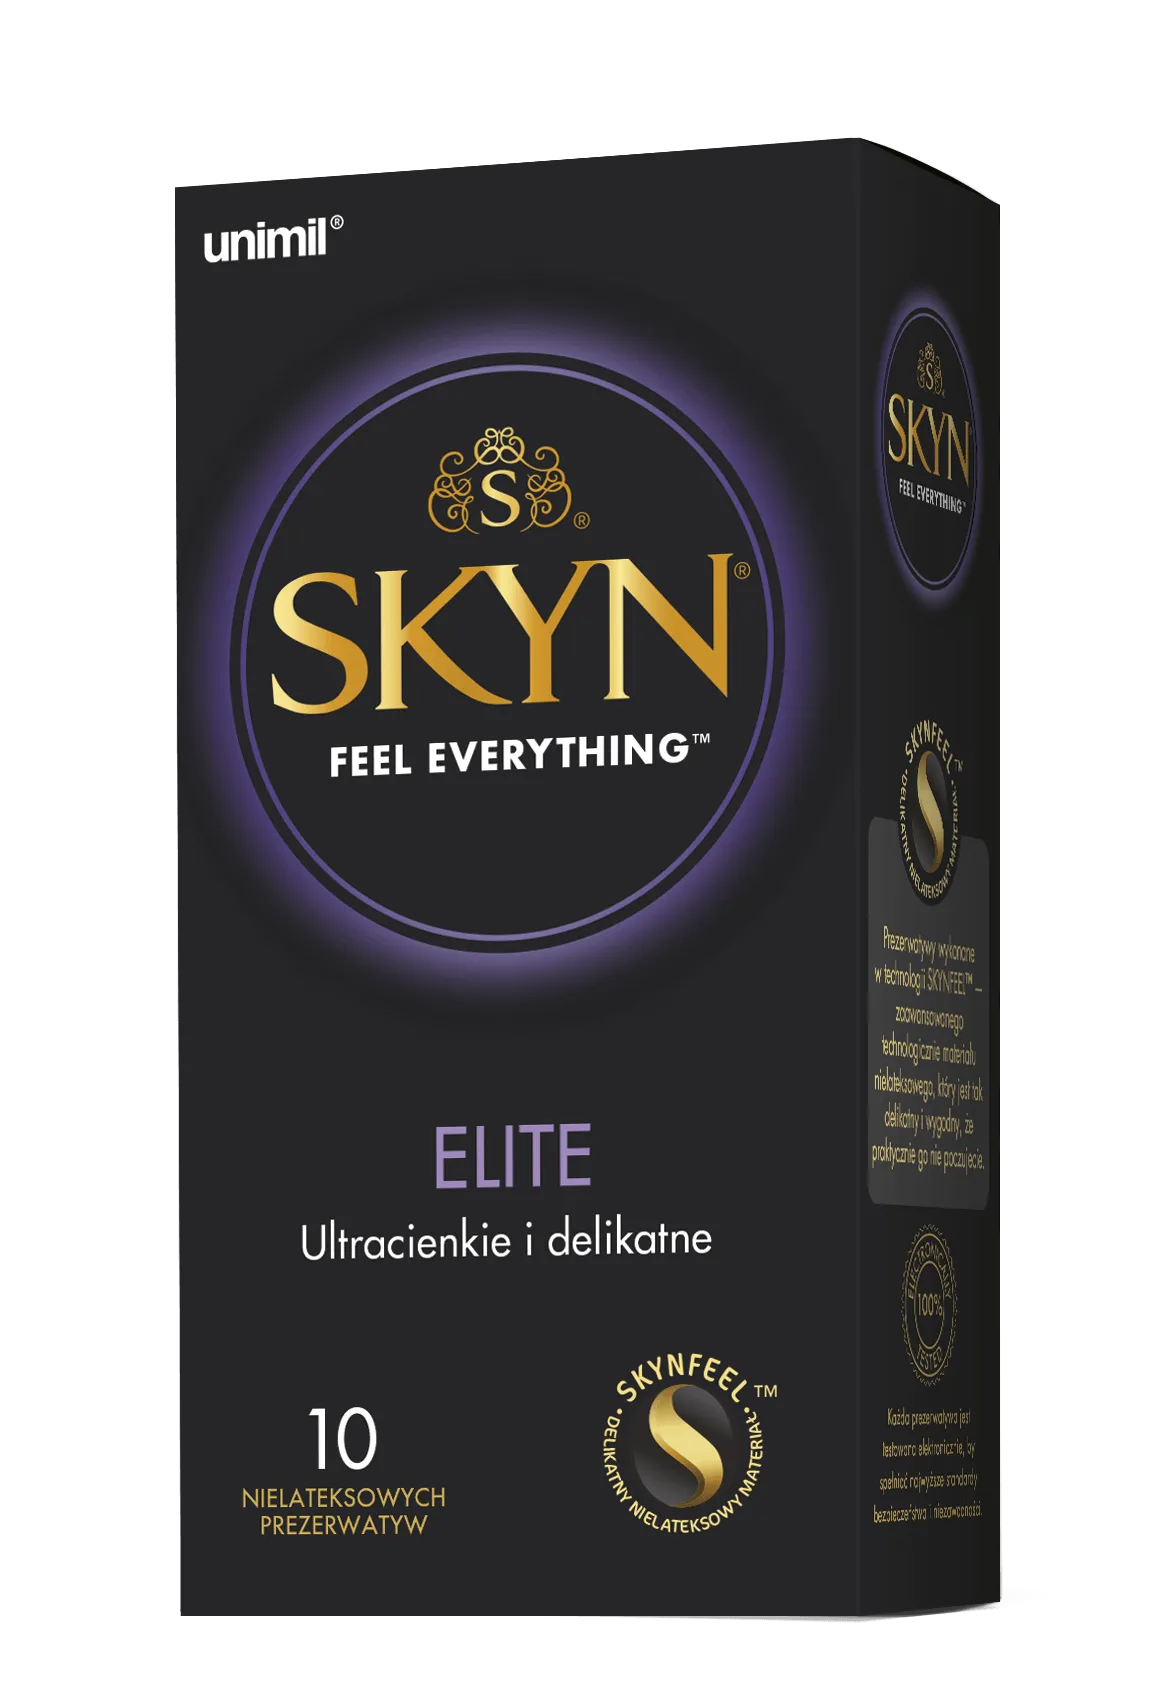 Unimil Skyn Elite, prezerwatywy nielateksowe, 10 sztuk